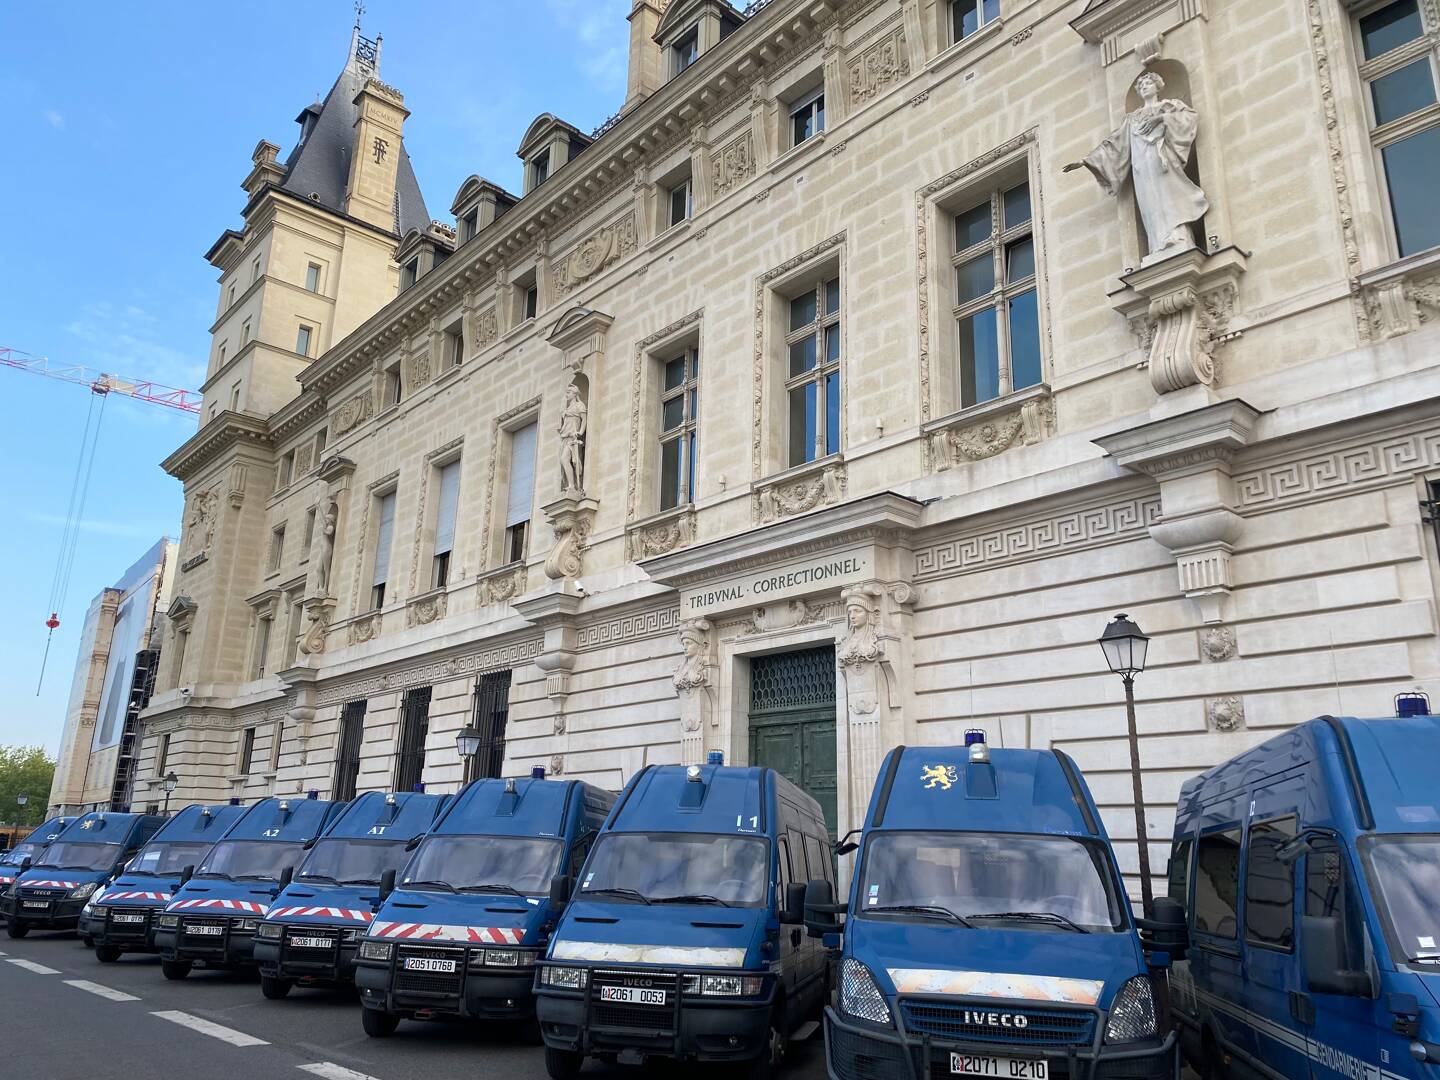 Le palais de justice de Paris, situé sur l’île de la Cité, est sursurveillé pendant le procès en appel de l’attaque terroriste du 14juillet 2016 à Nice.